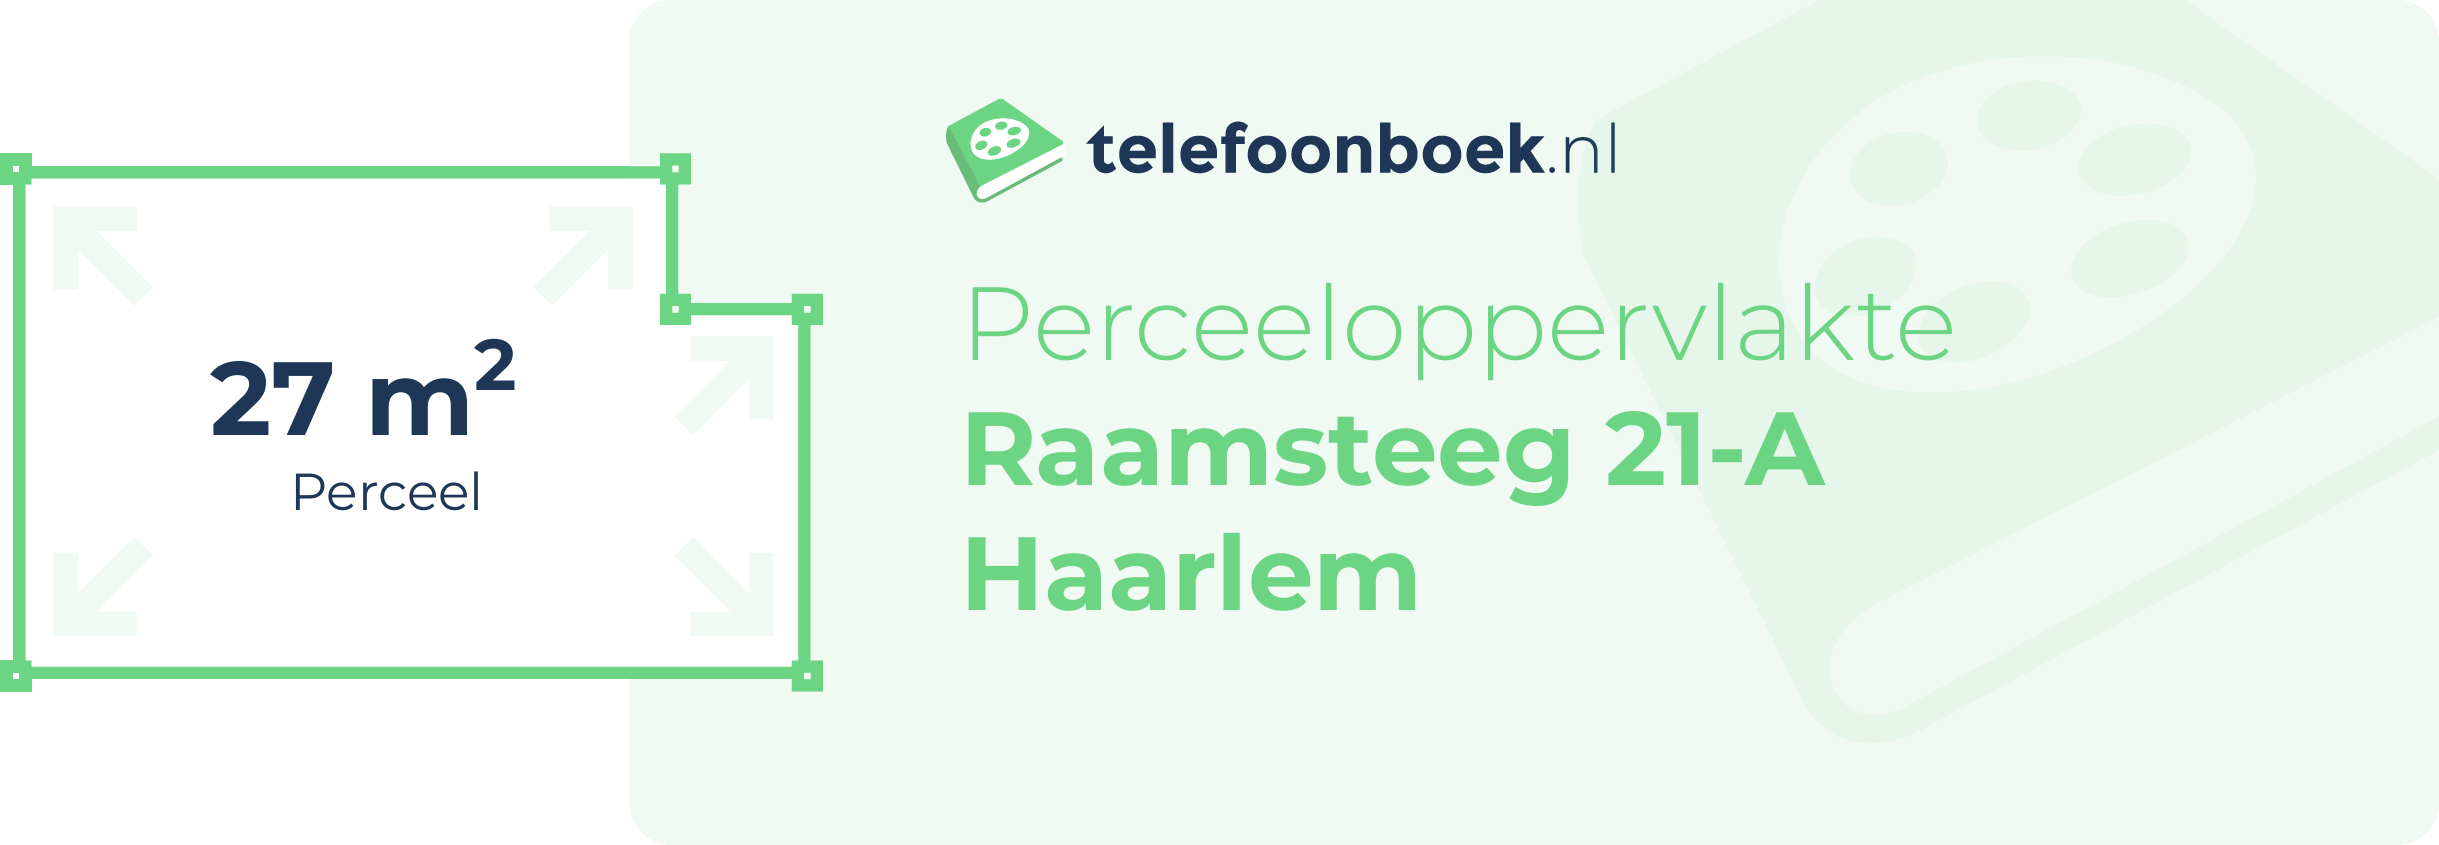 Perceeloppervlakte Raamsteeg 21-A Haarlem